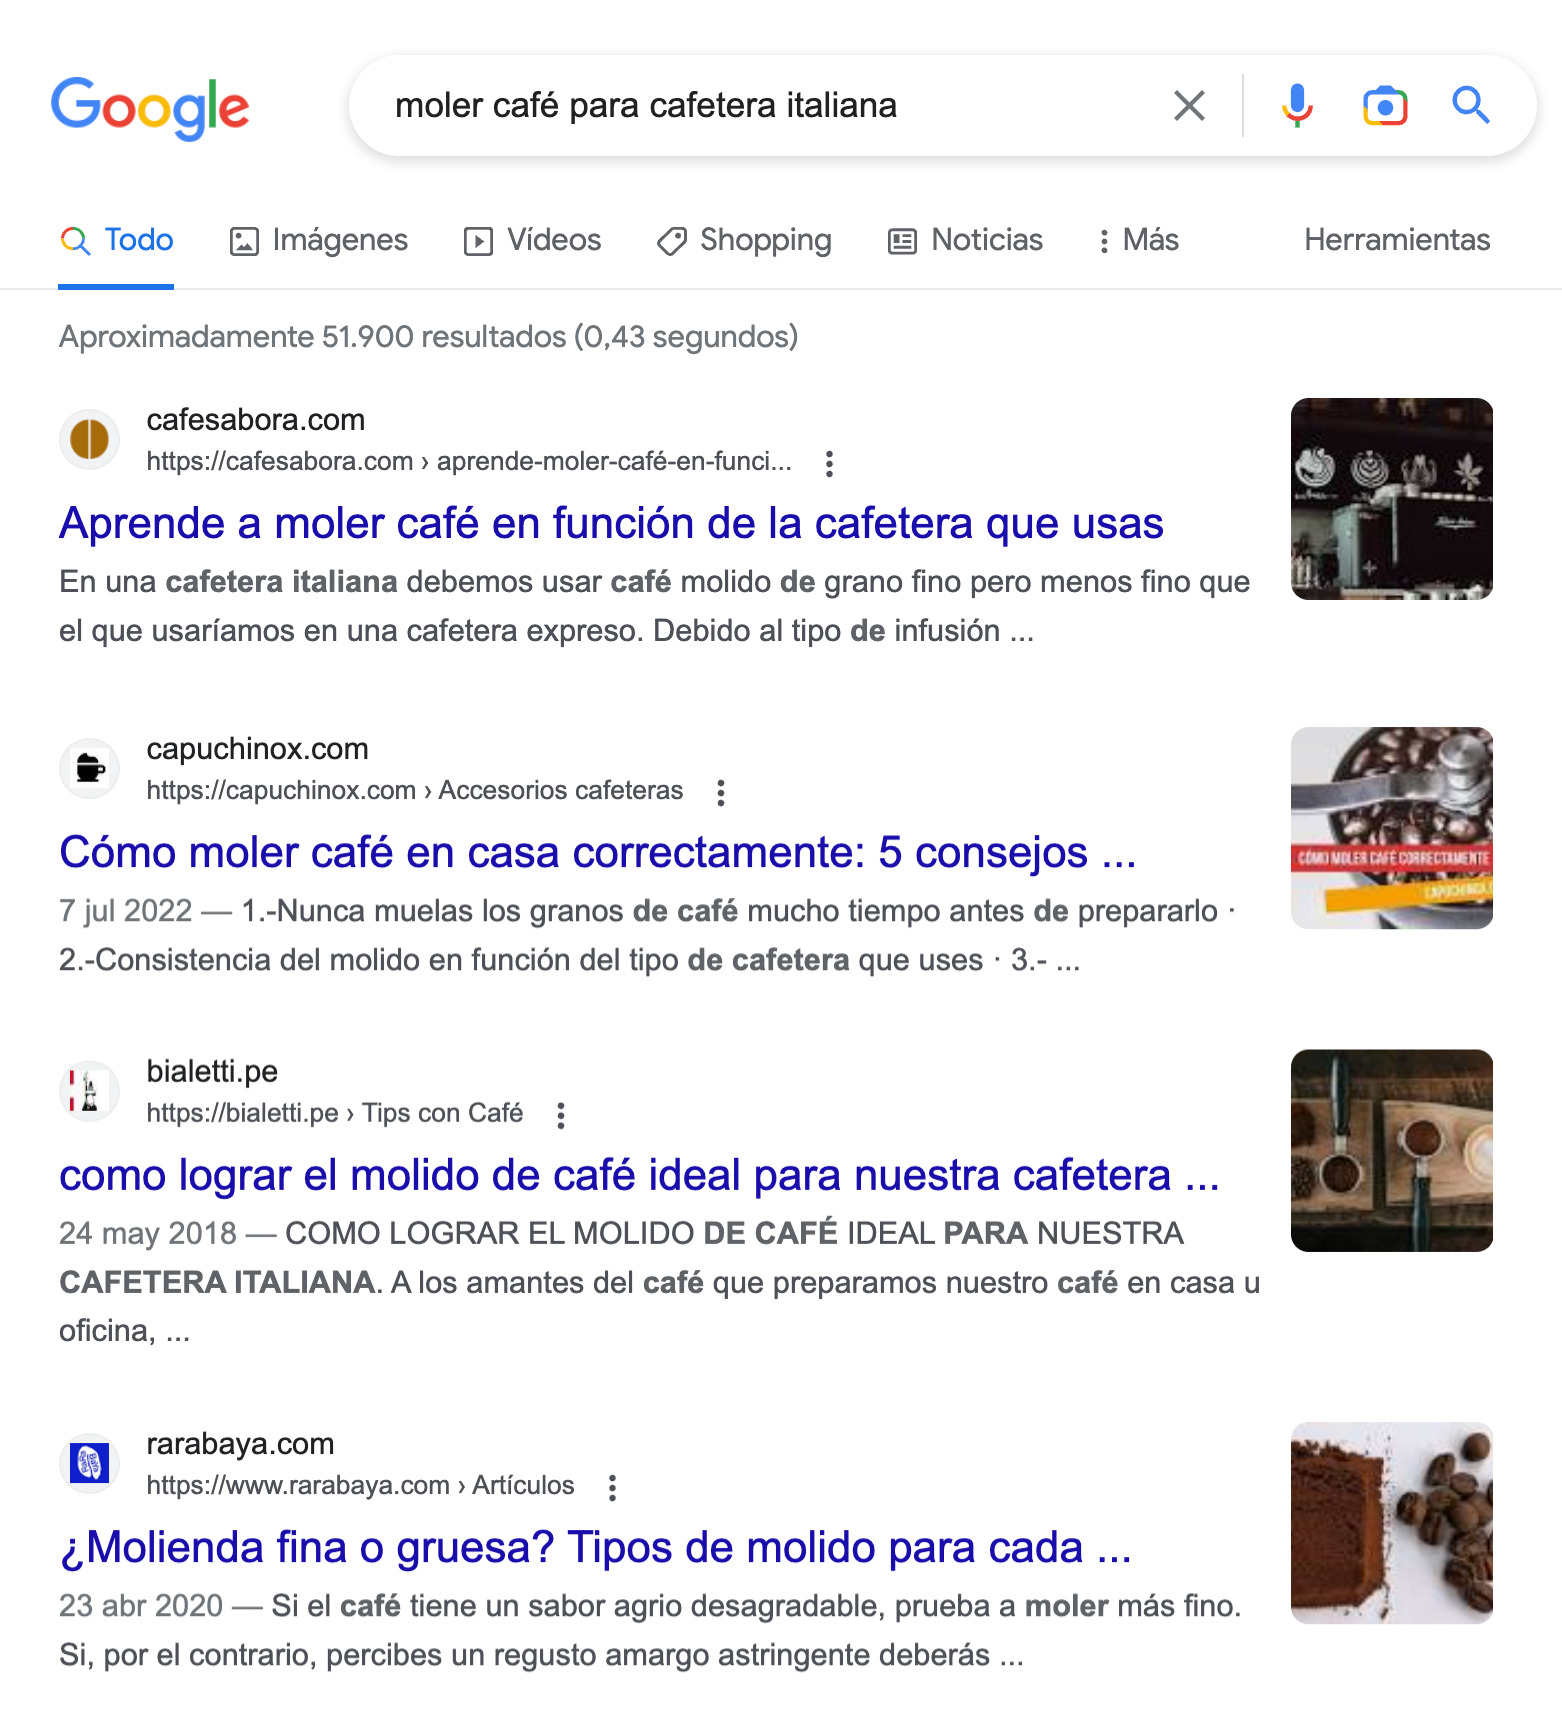 SERP de Google para la consulta "moler café para cafetera italiana"